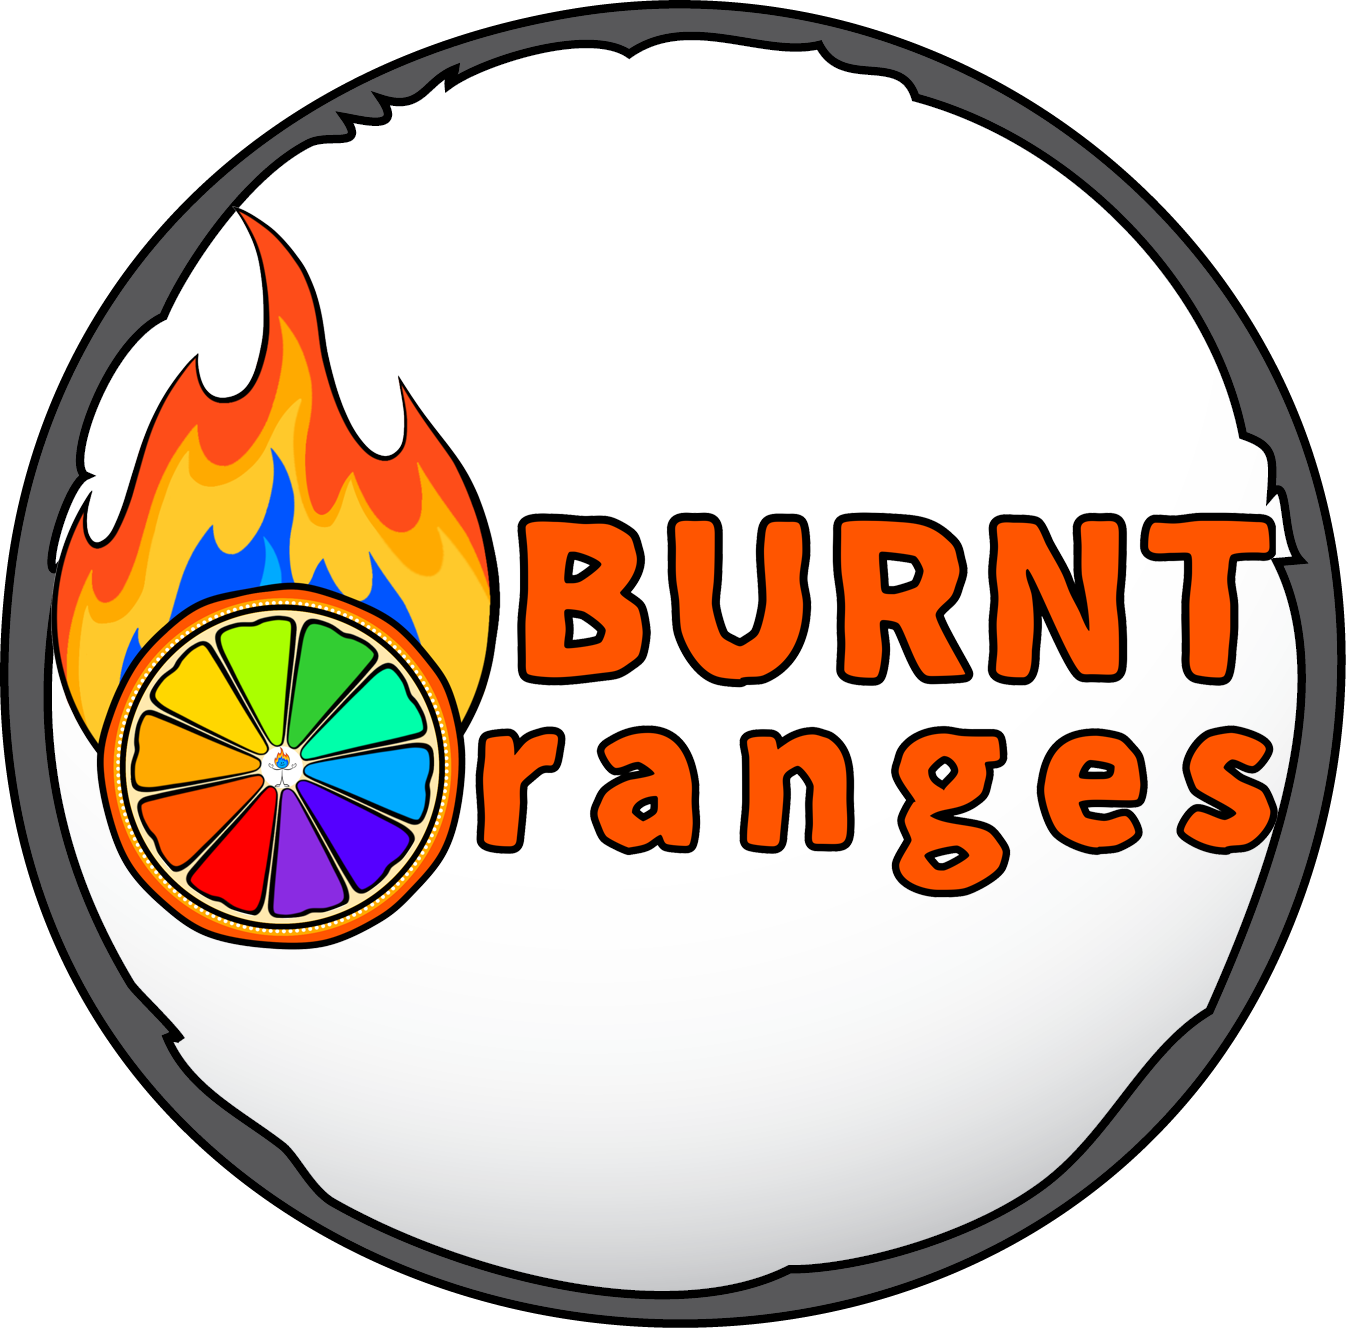 Burnt Oranges logo